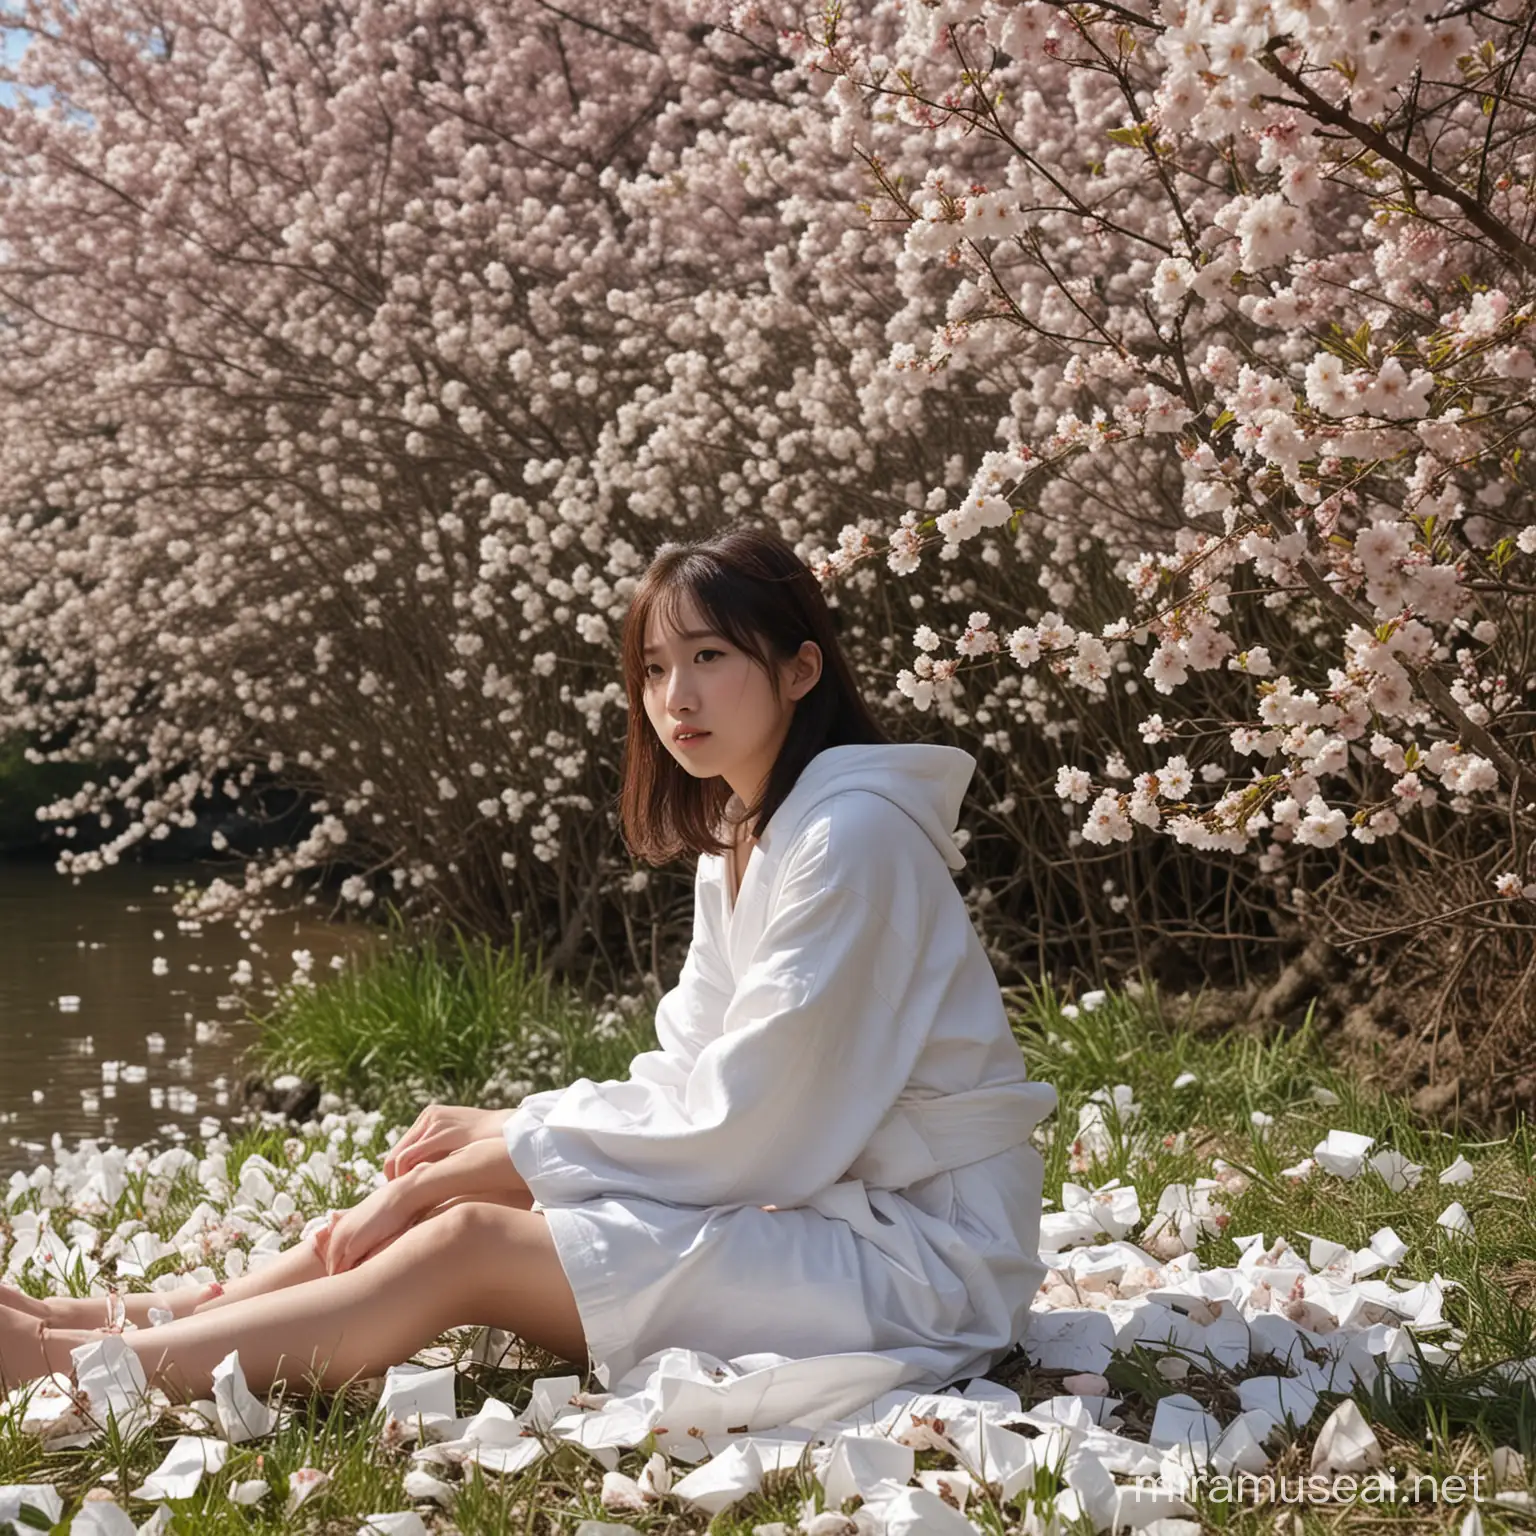 写真、実写、鮮明、高解像度、高画質、16歳の日本人の女の子、彼女は茂みに隠れてトイレットペーパーを持って座っています、満開の桜、川沿いの土手